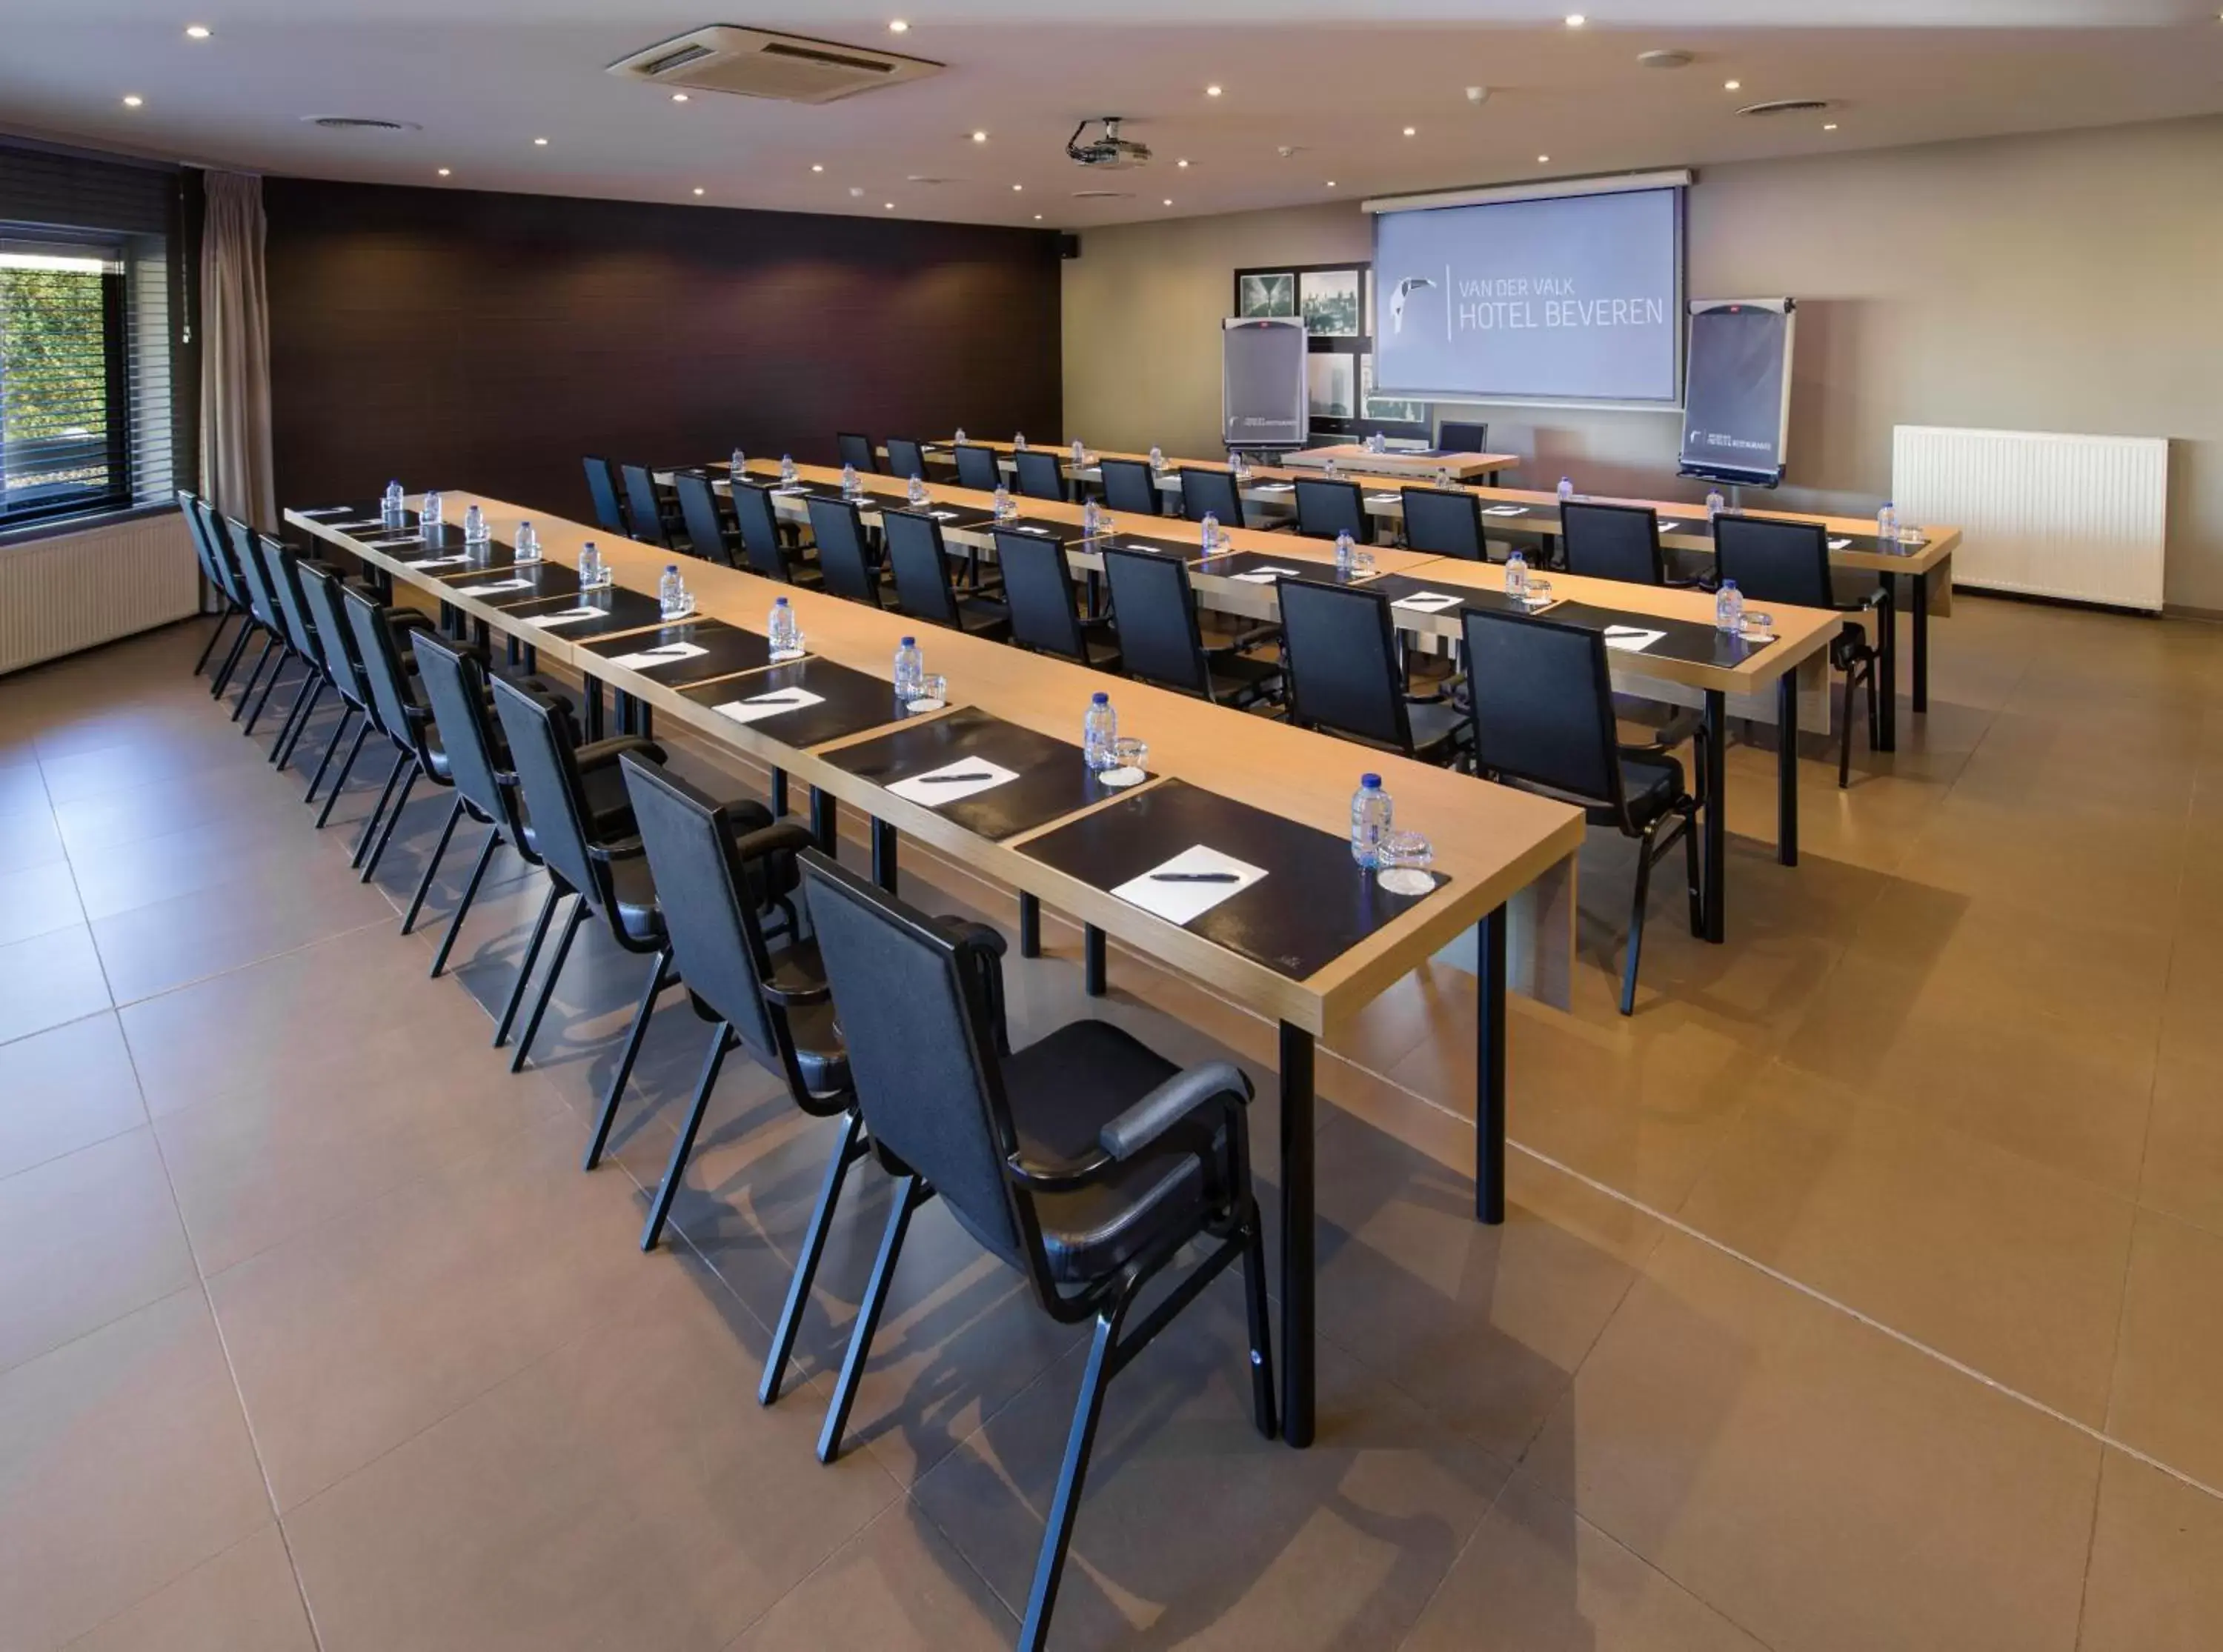 Meeting/conference room in Van der Valk Hotel Beveren